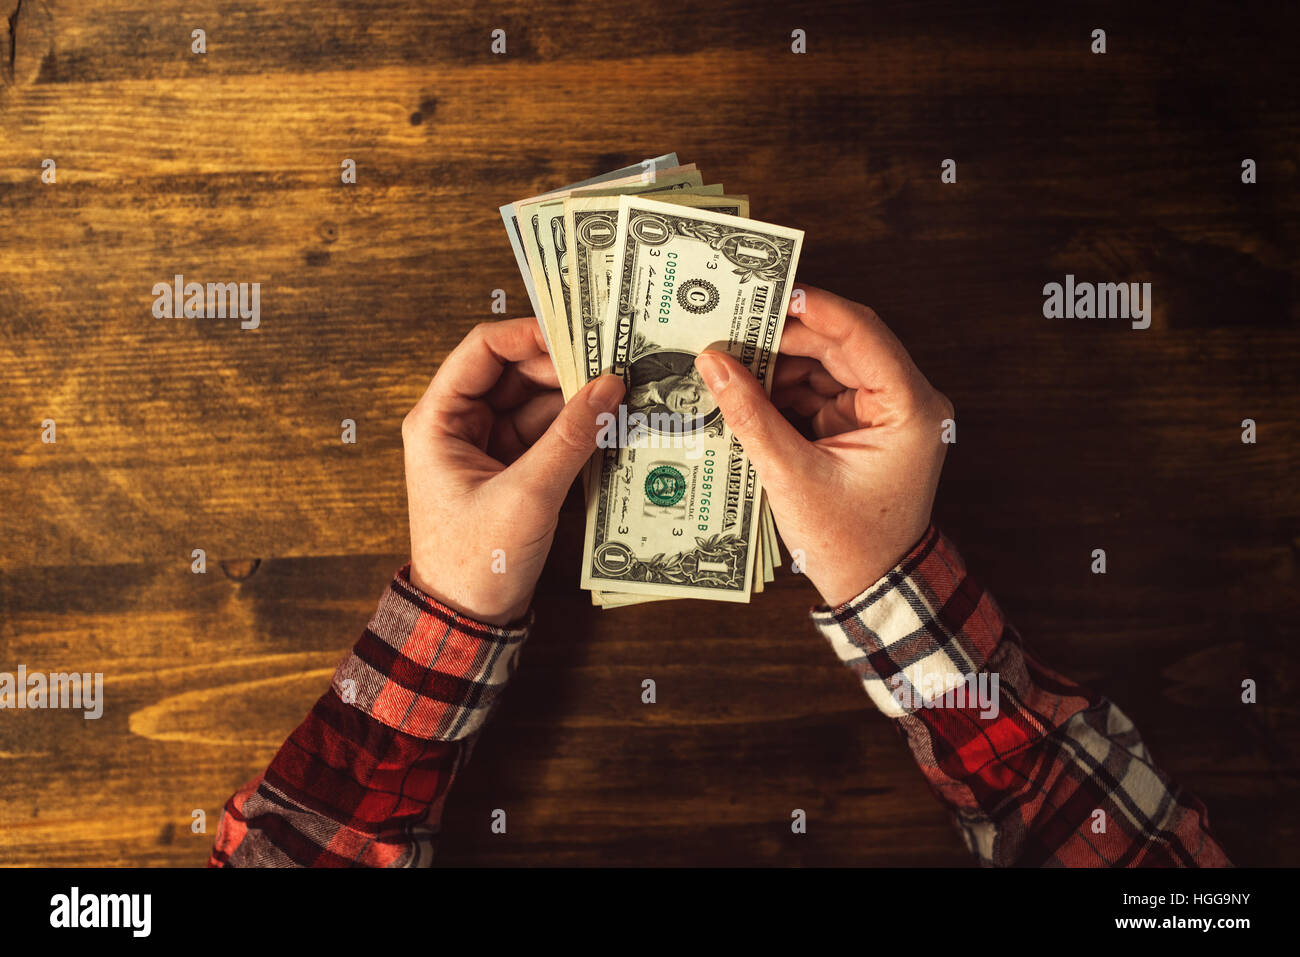 Vista superior de manos femeninas con billetes de dólar estadounidense a través de la oficina de madera Foto de stock